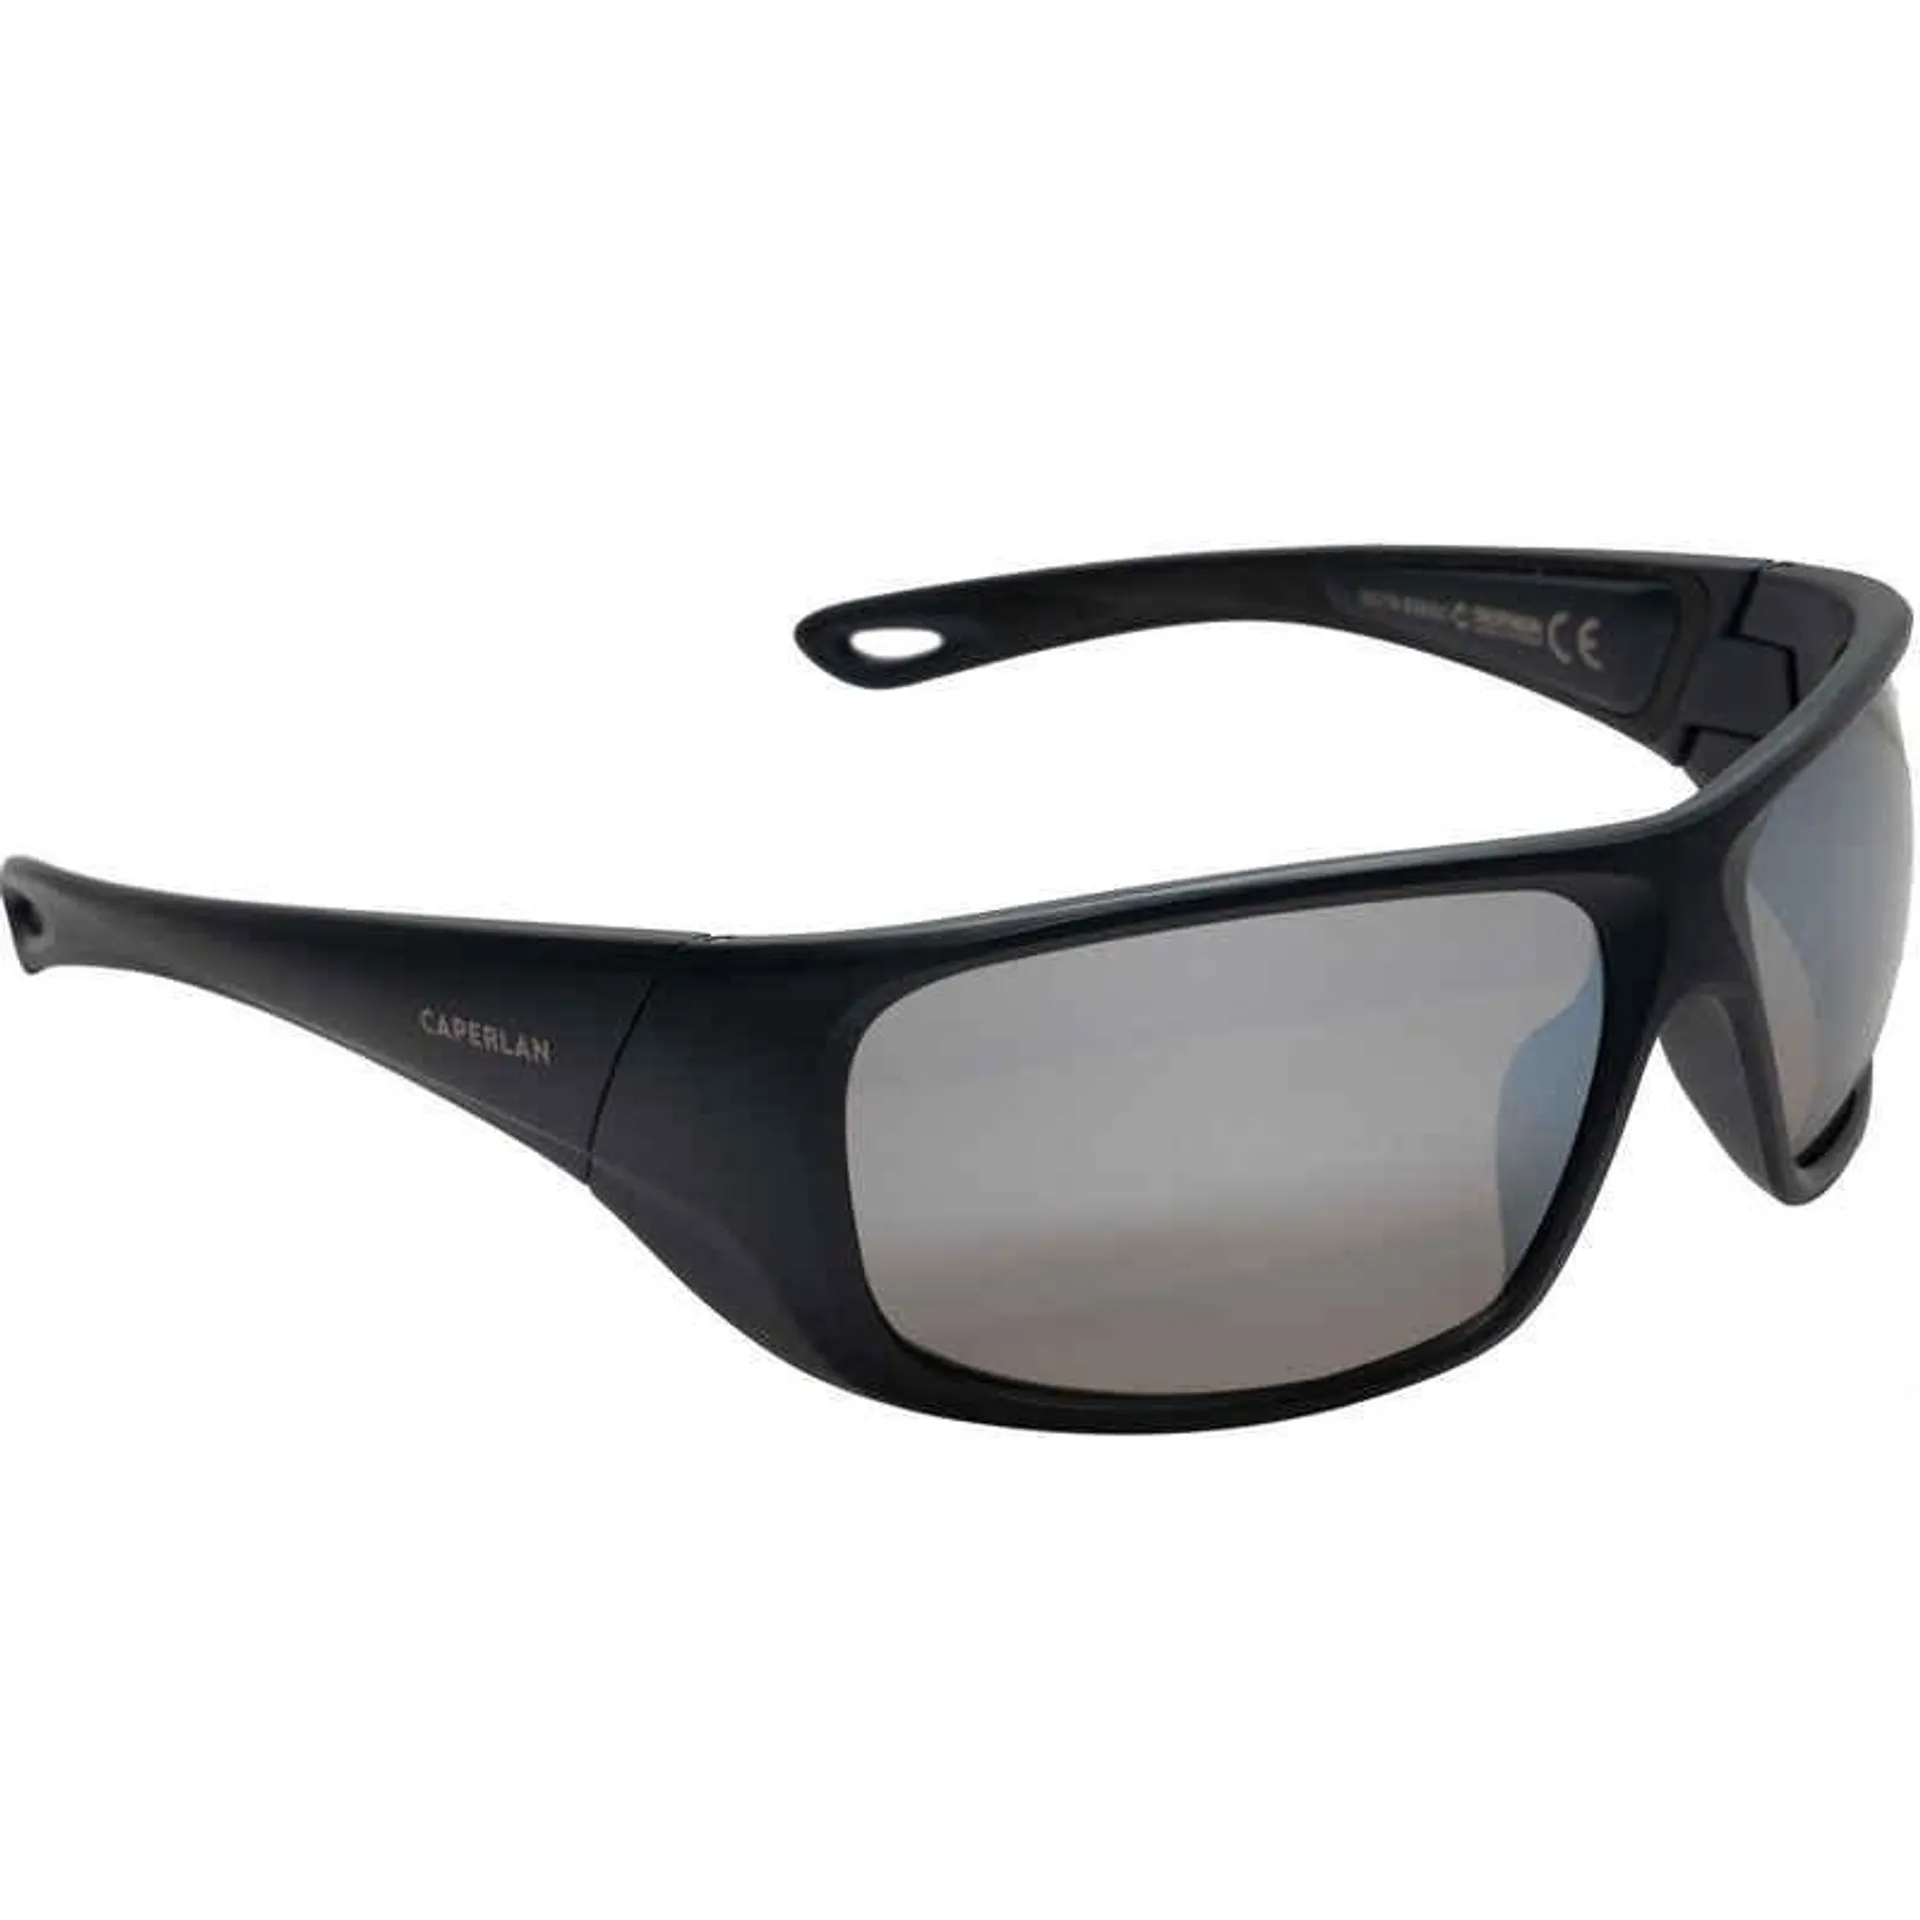 Rybárske polarizačné okuliare Skyrazer 500 sivé